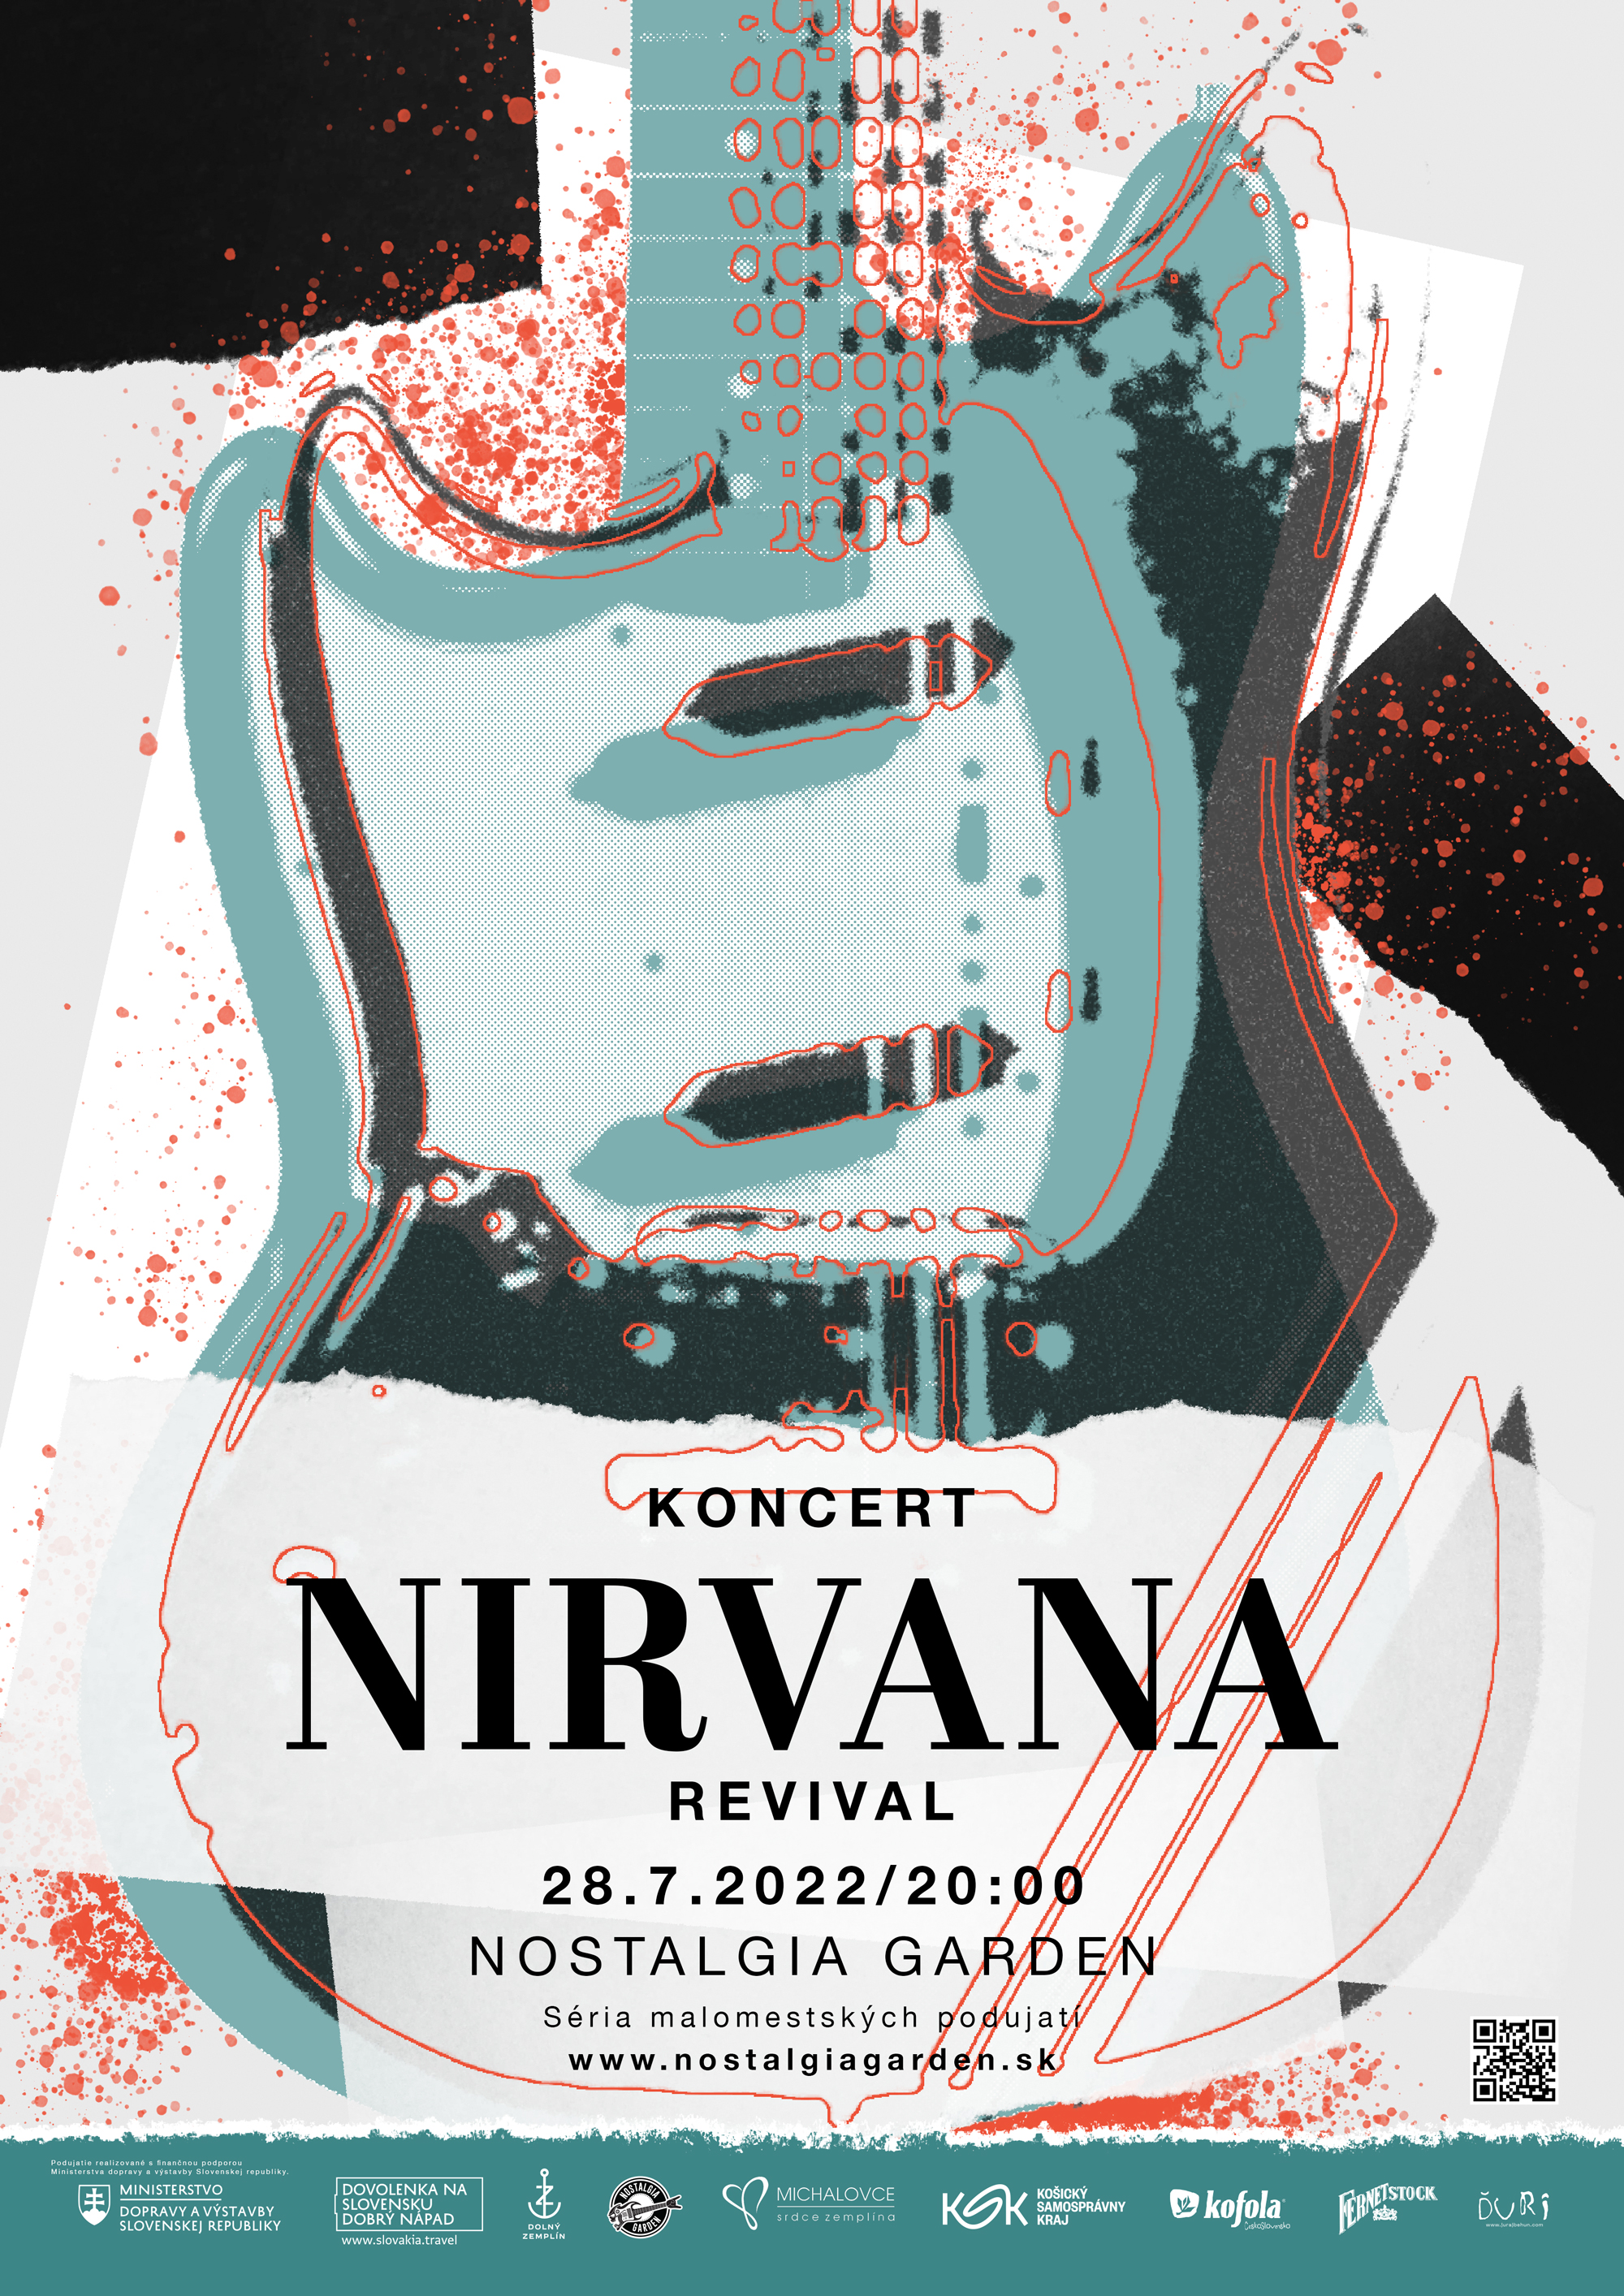 Plagát pre Nirvana Revival